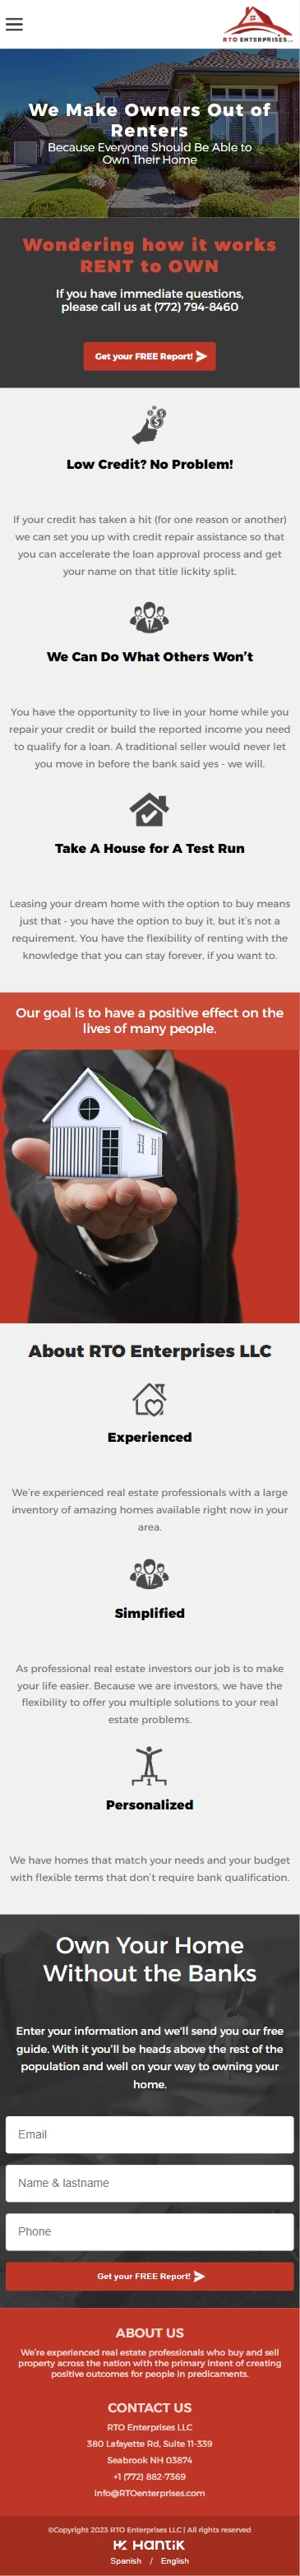 RTO Enterprises